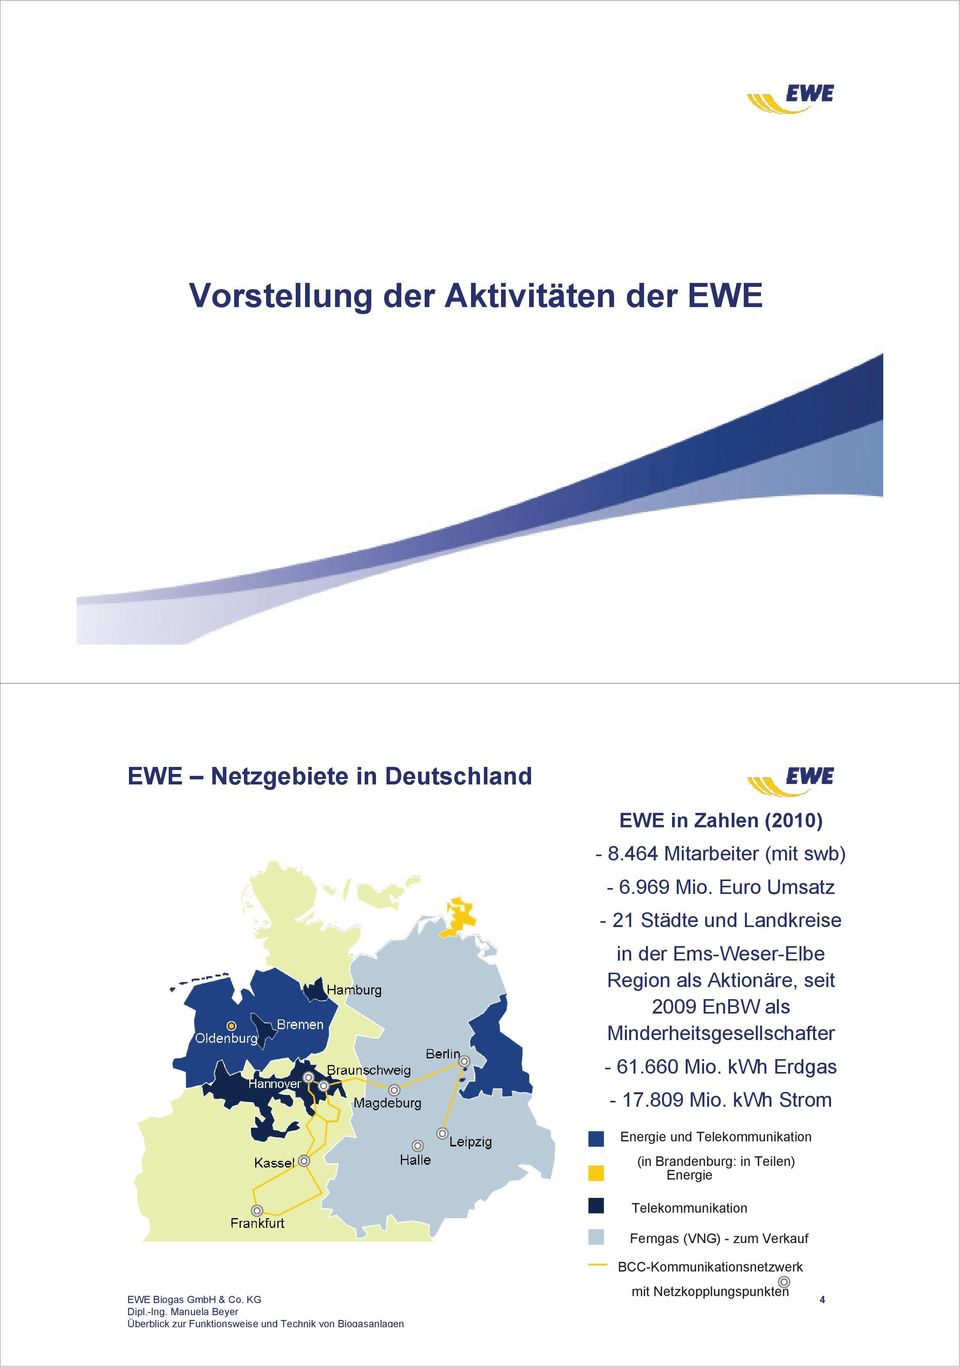 Euro Umsatz - 21 Städte und Landkreise in der Ems-Weser-Elbe Region als Aktionäre, seit 2009 EnBW als Minderheitsgesellschafter - 61.